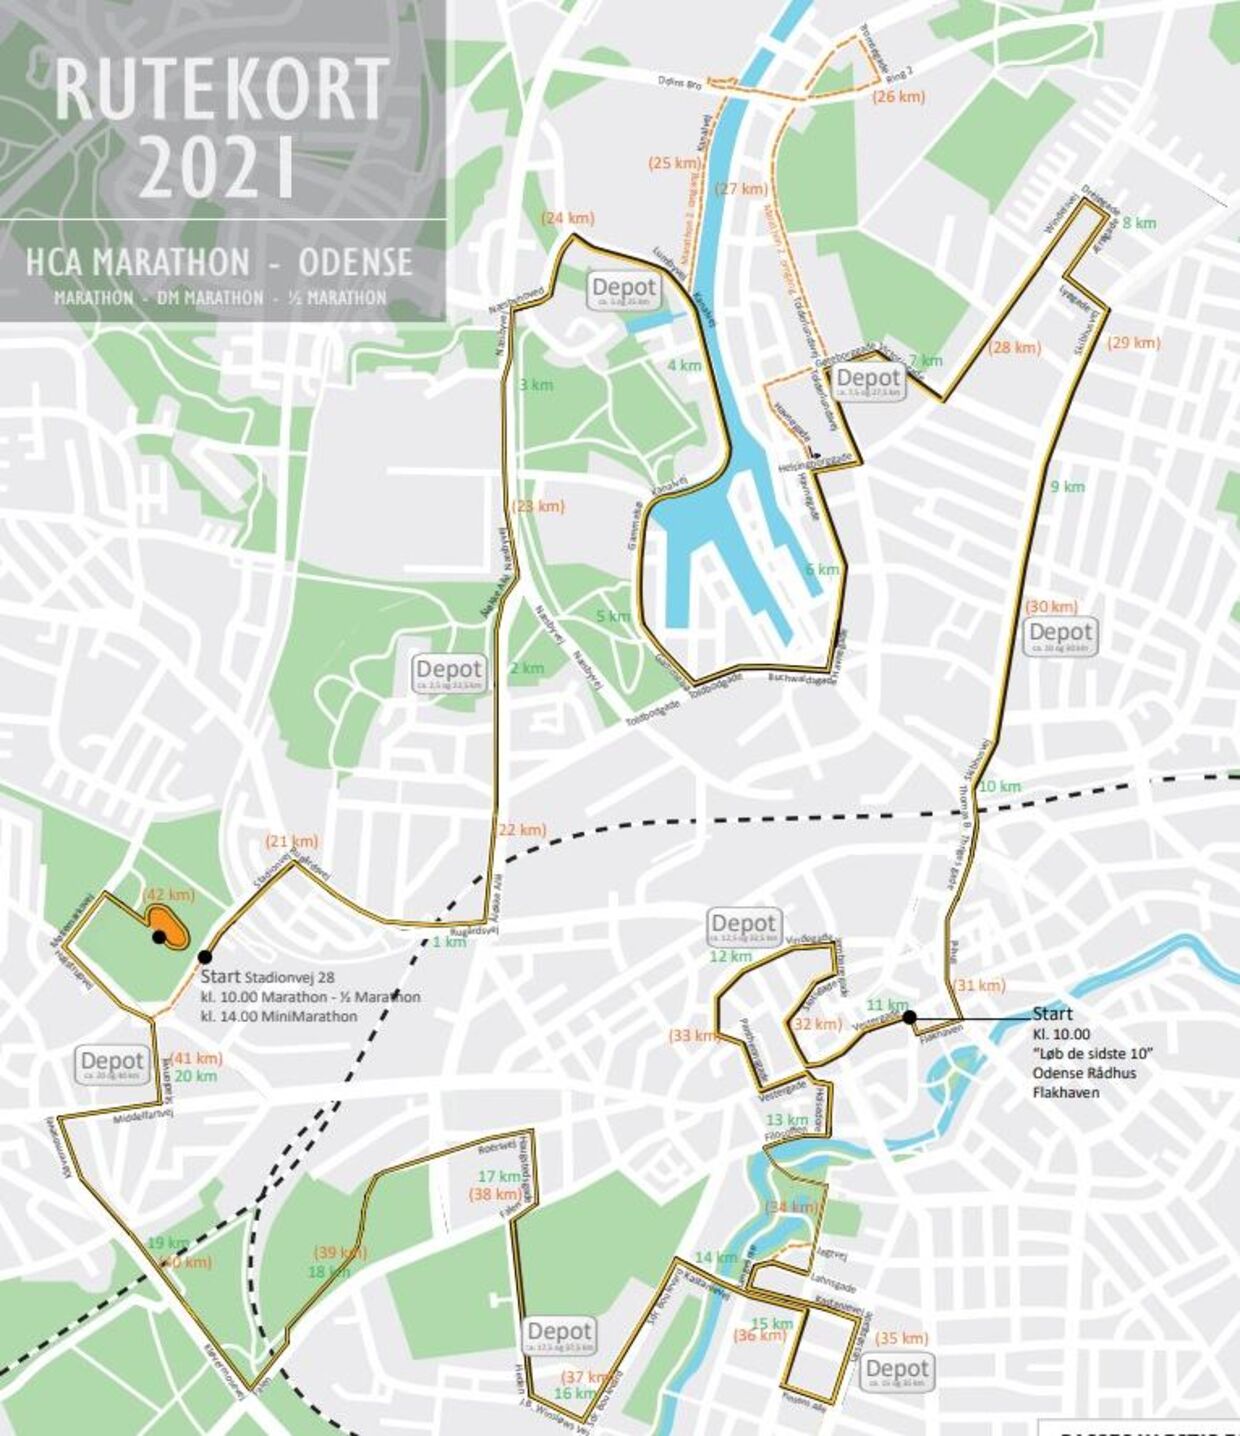 Løbet starter i Odense Idrætspark og slutter efter 42,195 kilometer samme sted.